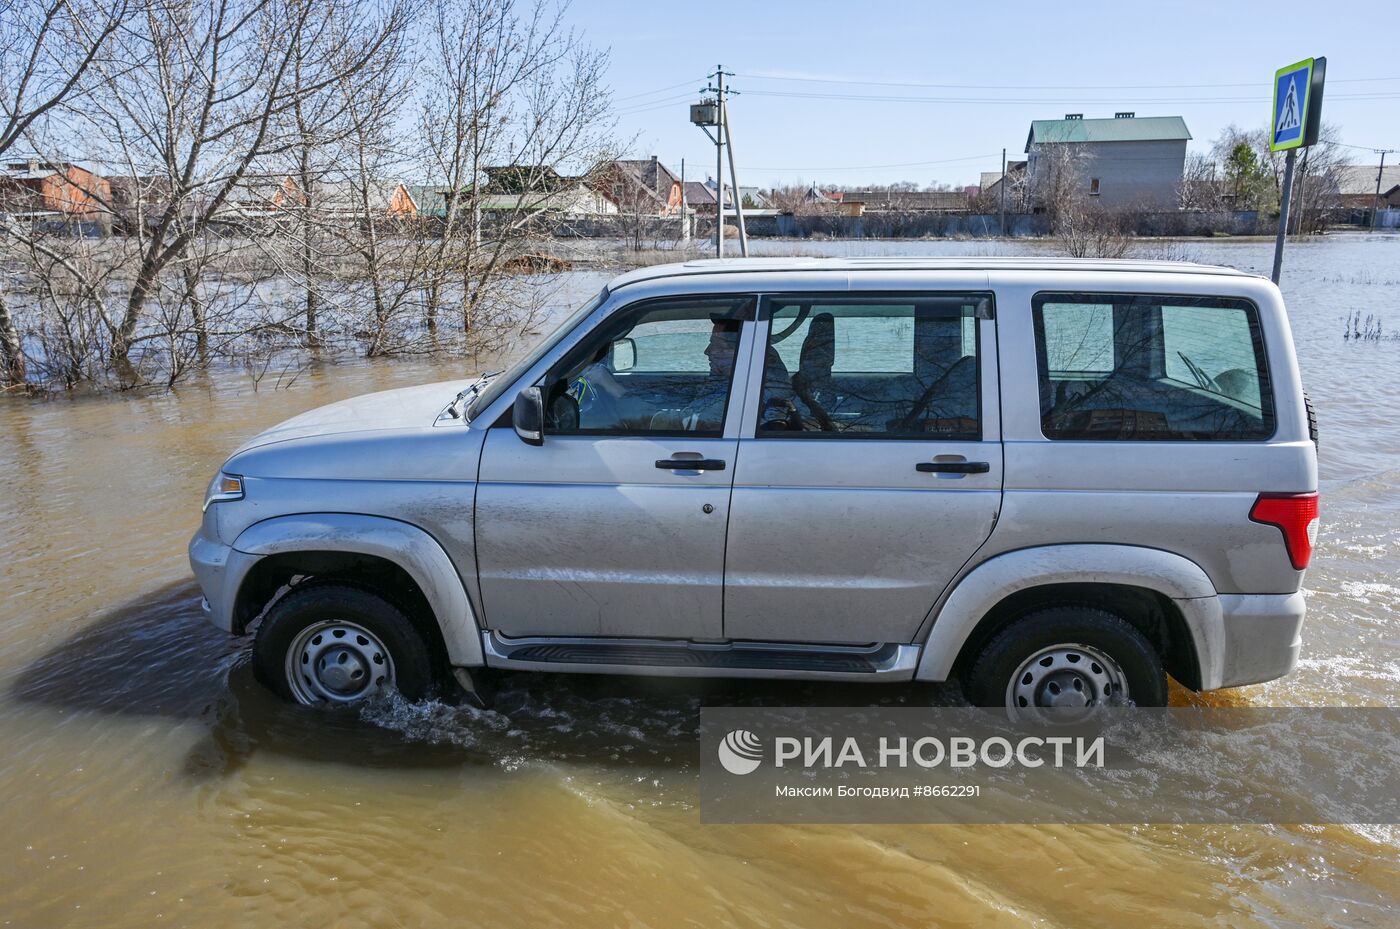 Паводок в Оренбургской области